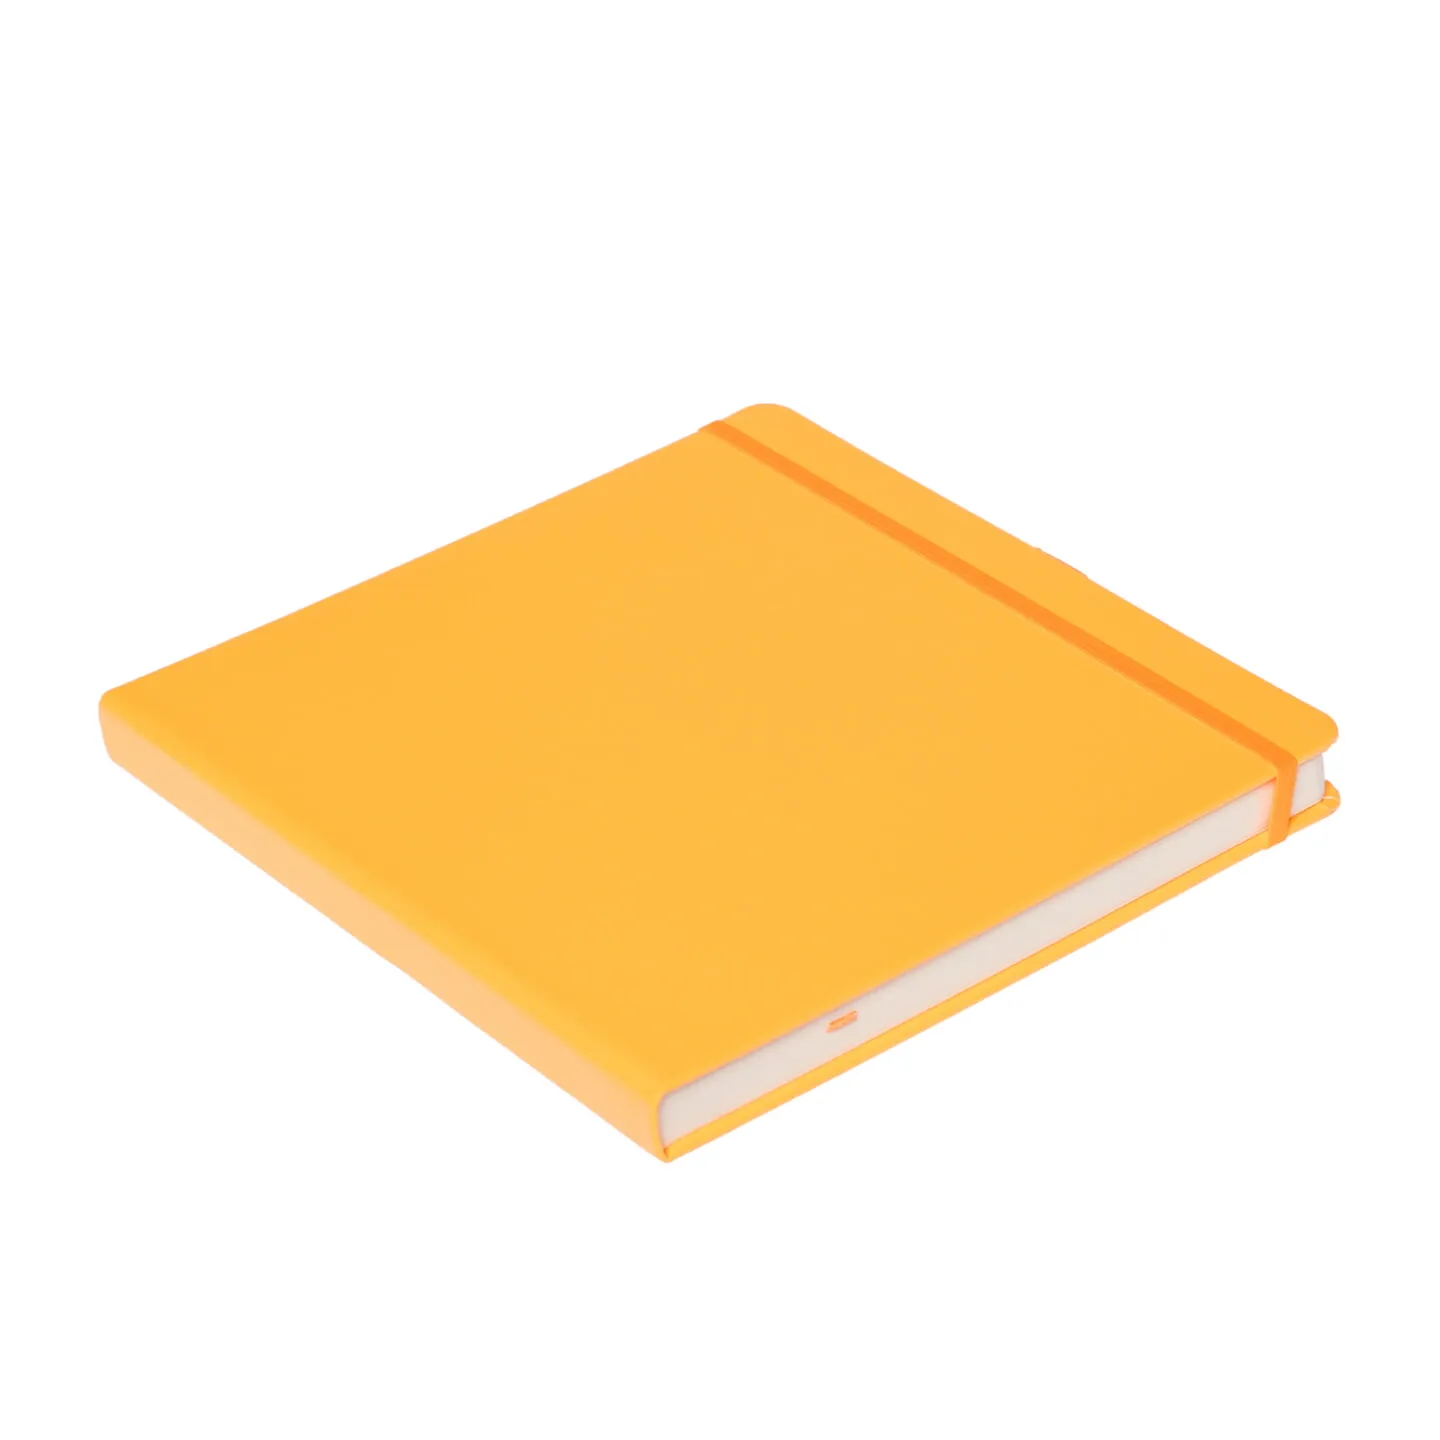 Блокнот для зарисовок Sketchmarker 140г/кв.м 20*20cм 80л (Оранжевый)